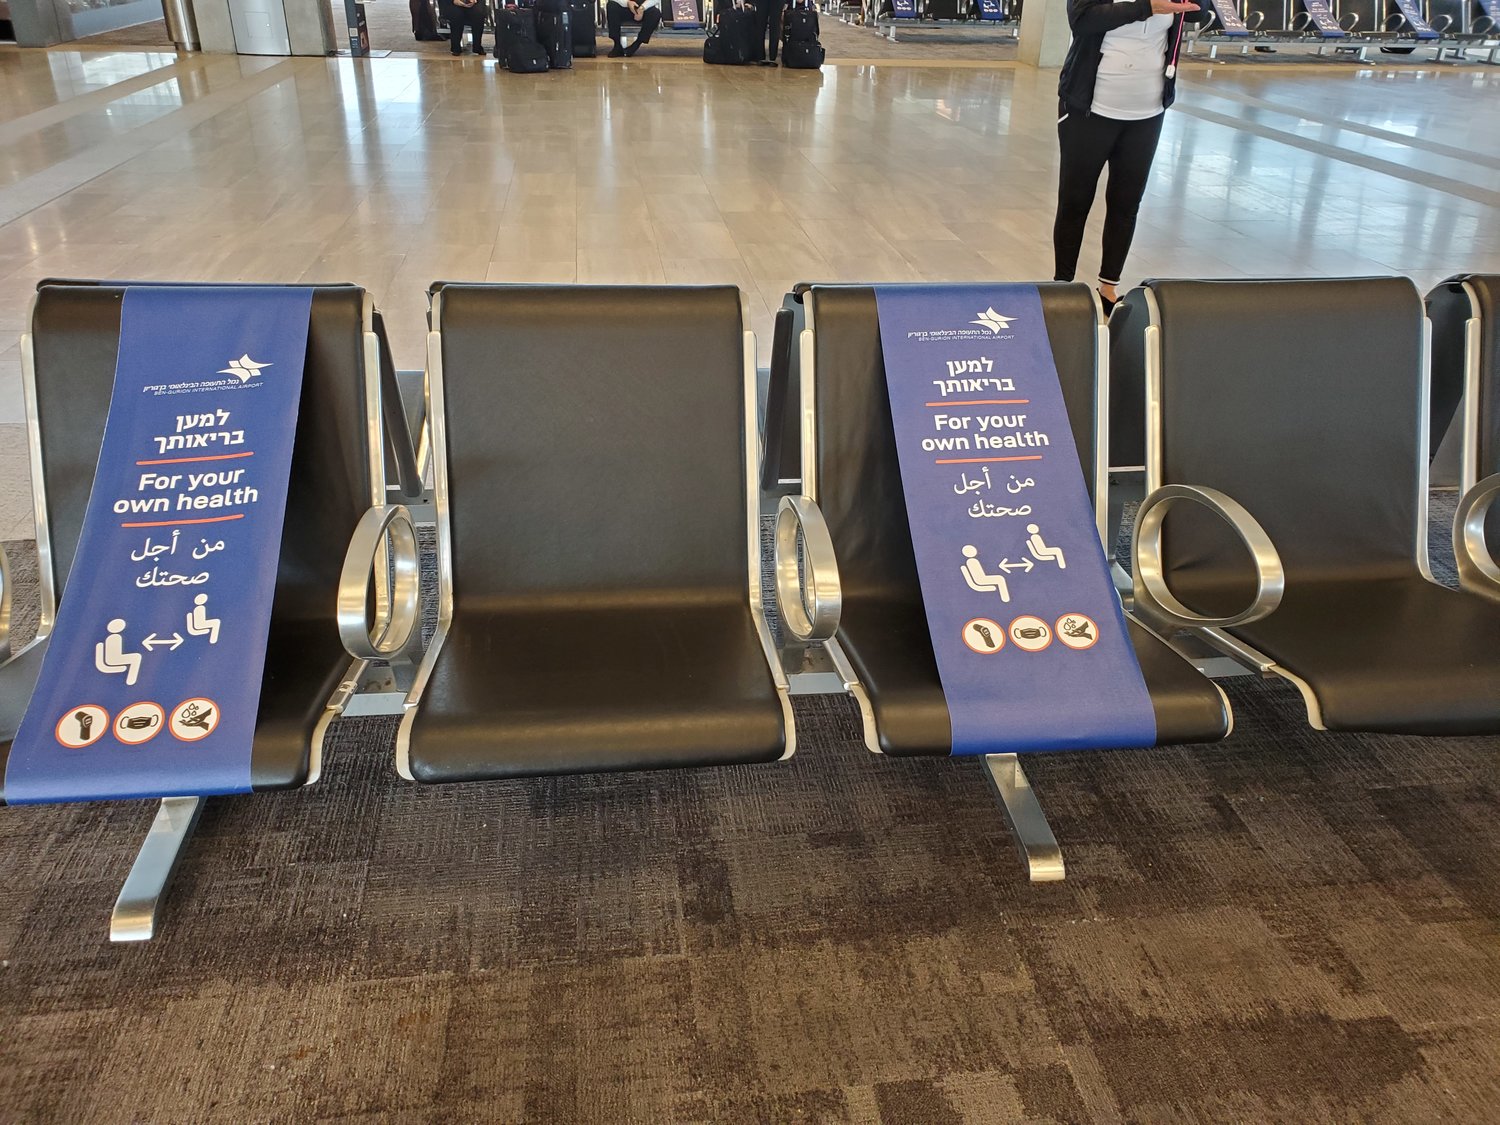 Seats at Ben Gurion airport.